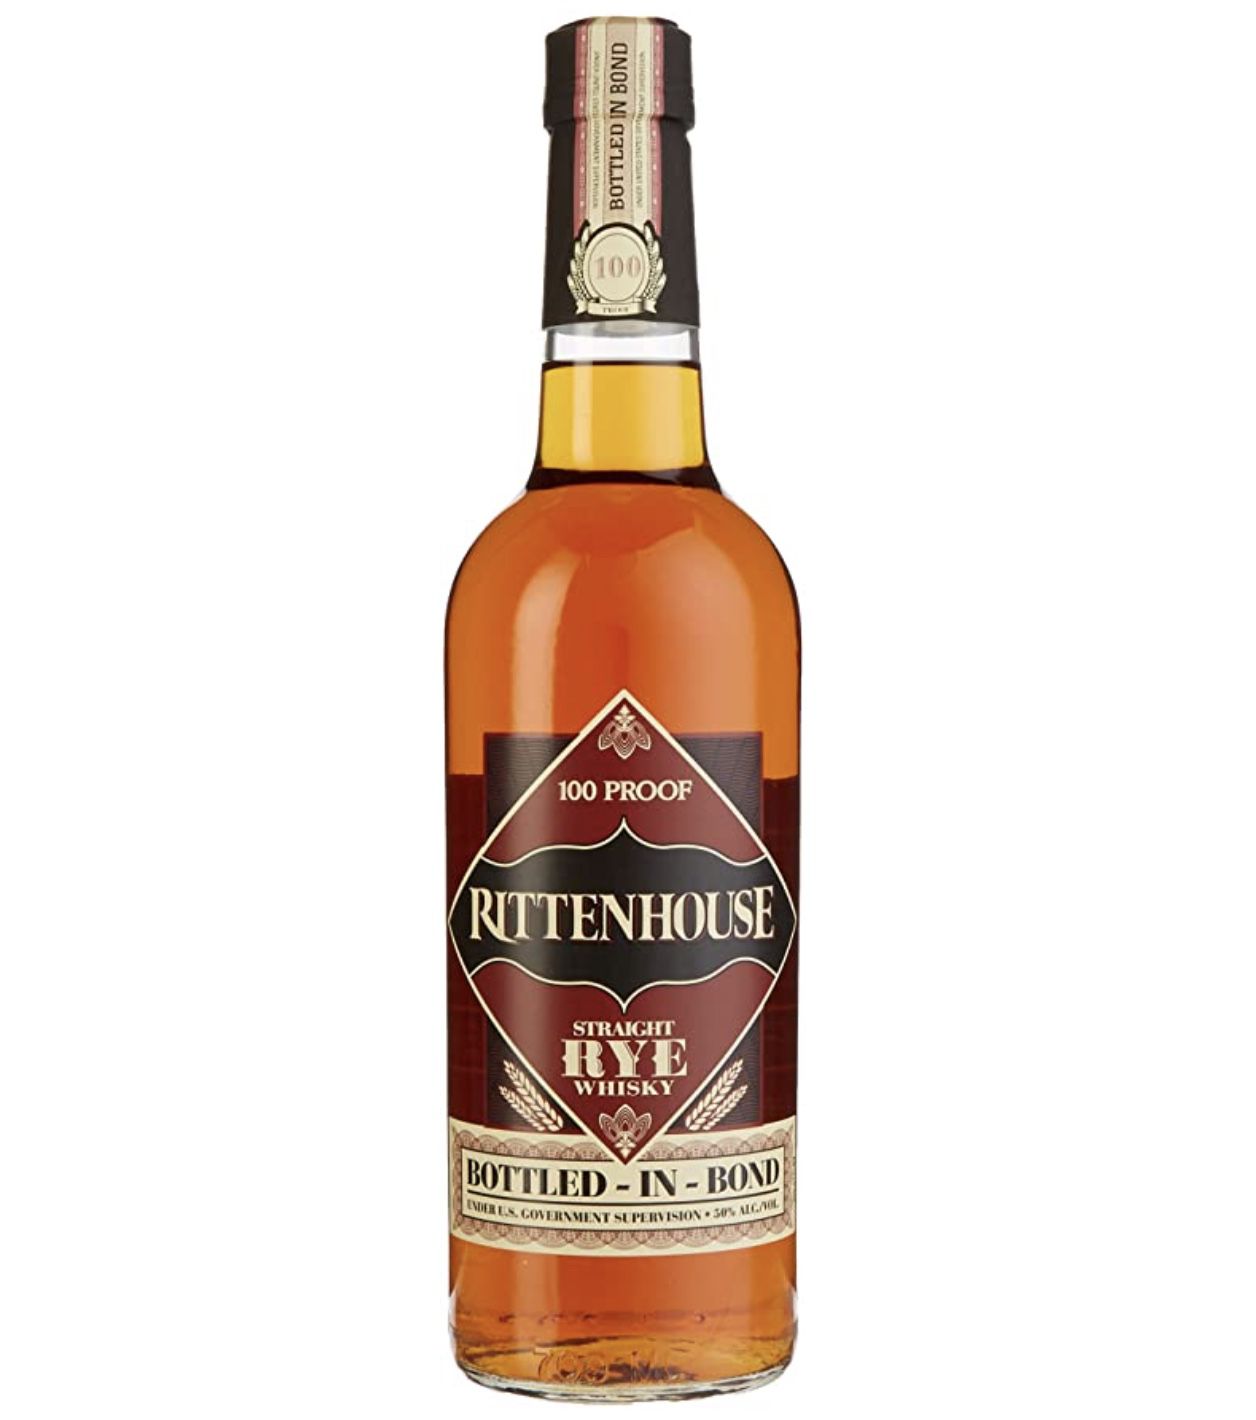 Rittenhouse Straight Rye Whisky 100 Proof Bottled in Bond ab 26,31€ (statt 35€)   Sparabo